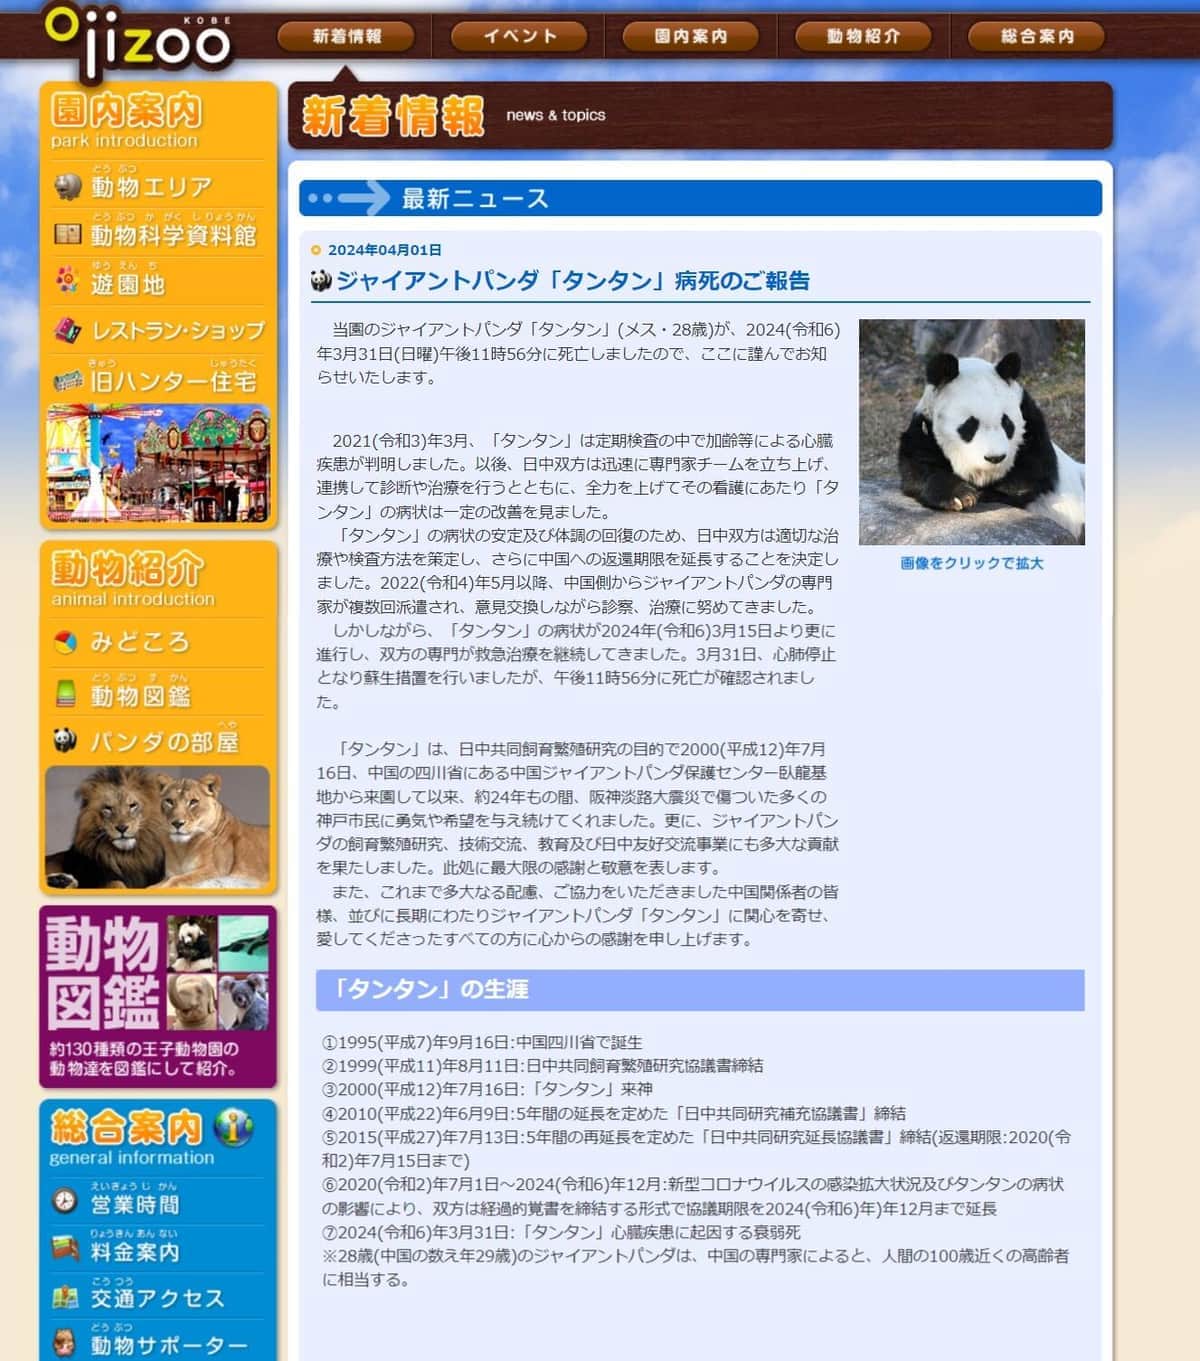 神戸市立王子動物公園の声明（神戸市立王子動物園の公式サイトより）